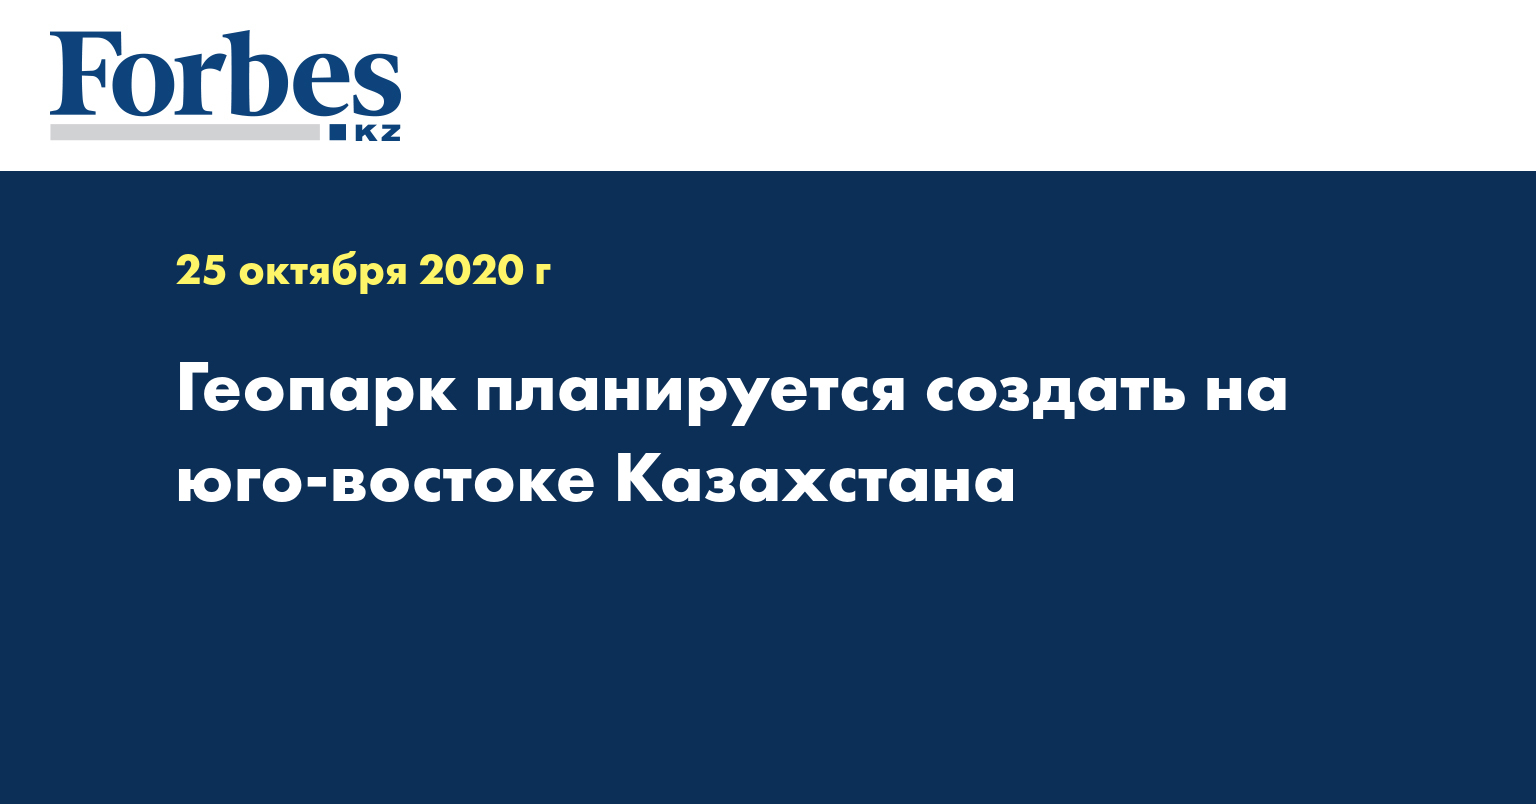 Геопарк планируется создать на юго-востоке Казахстана  